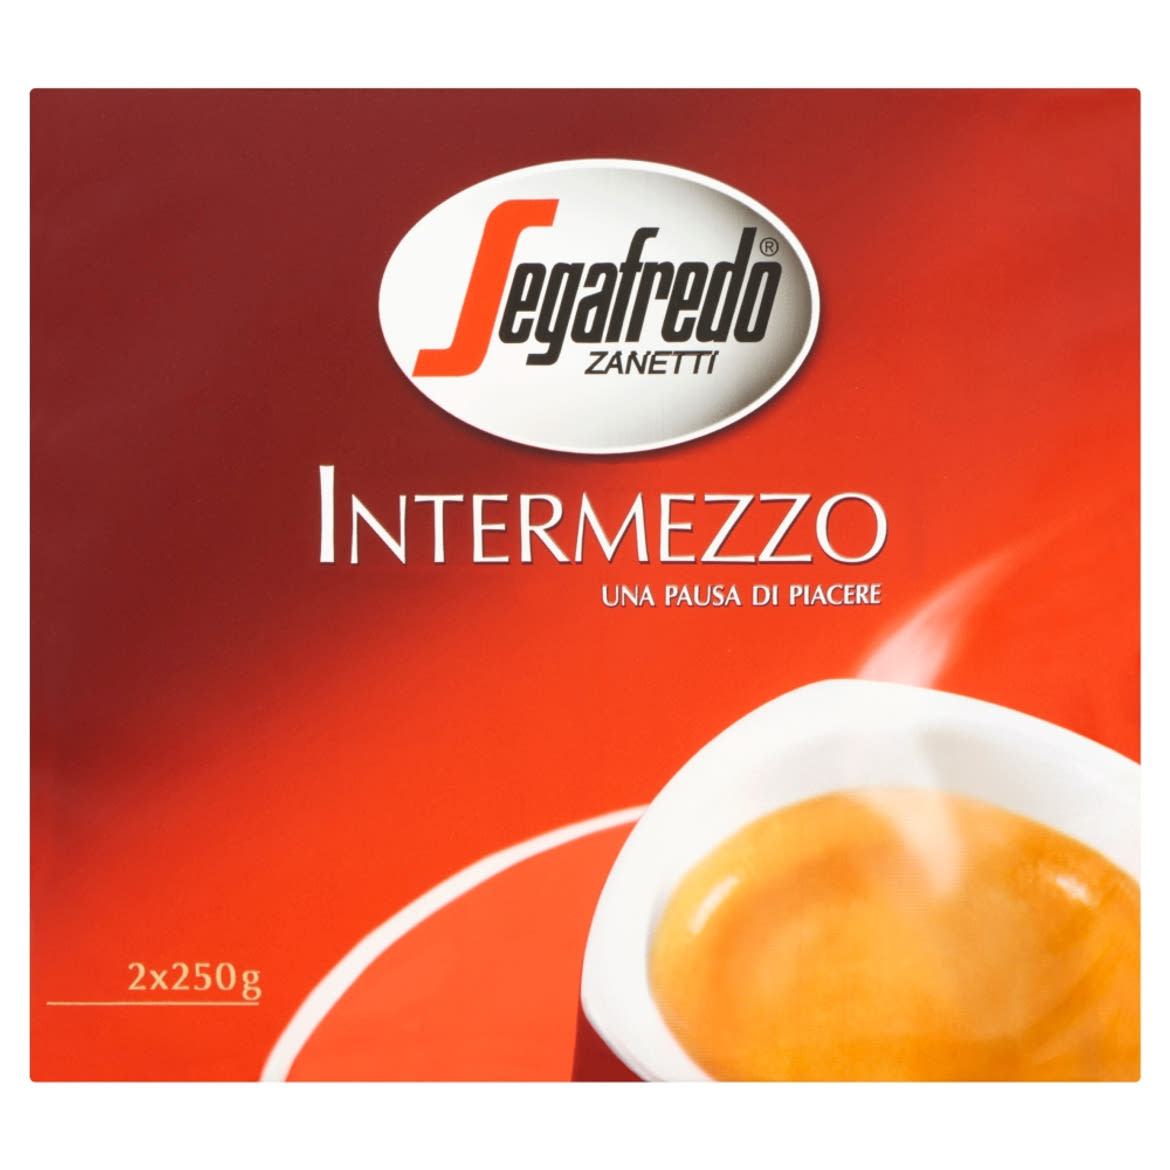 Segafredo Zanetti Intermezzo őrölt pörkölt kávé 2 x